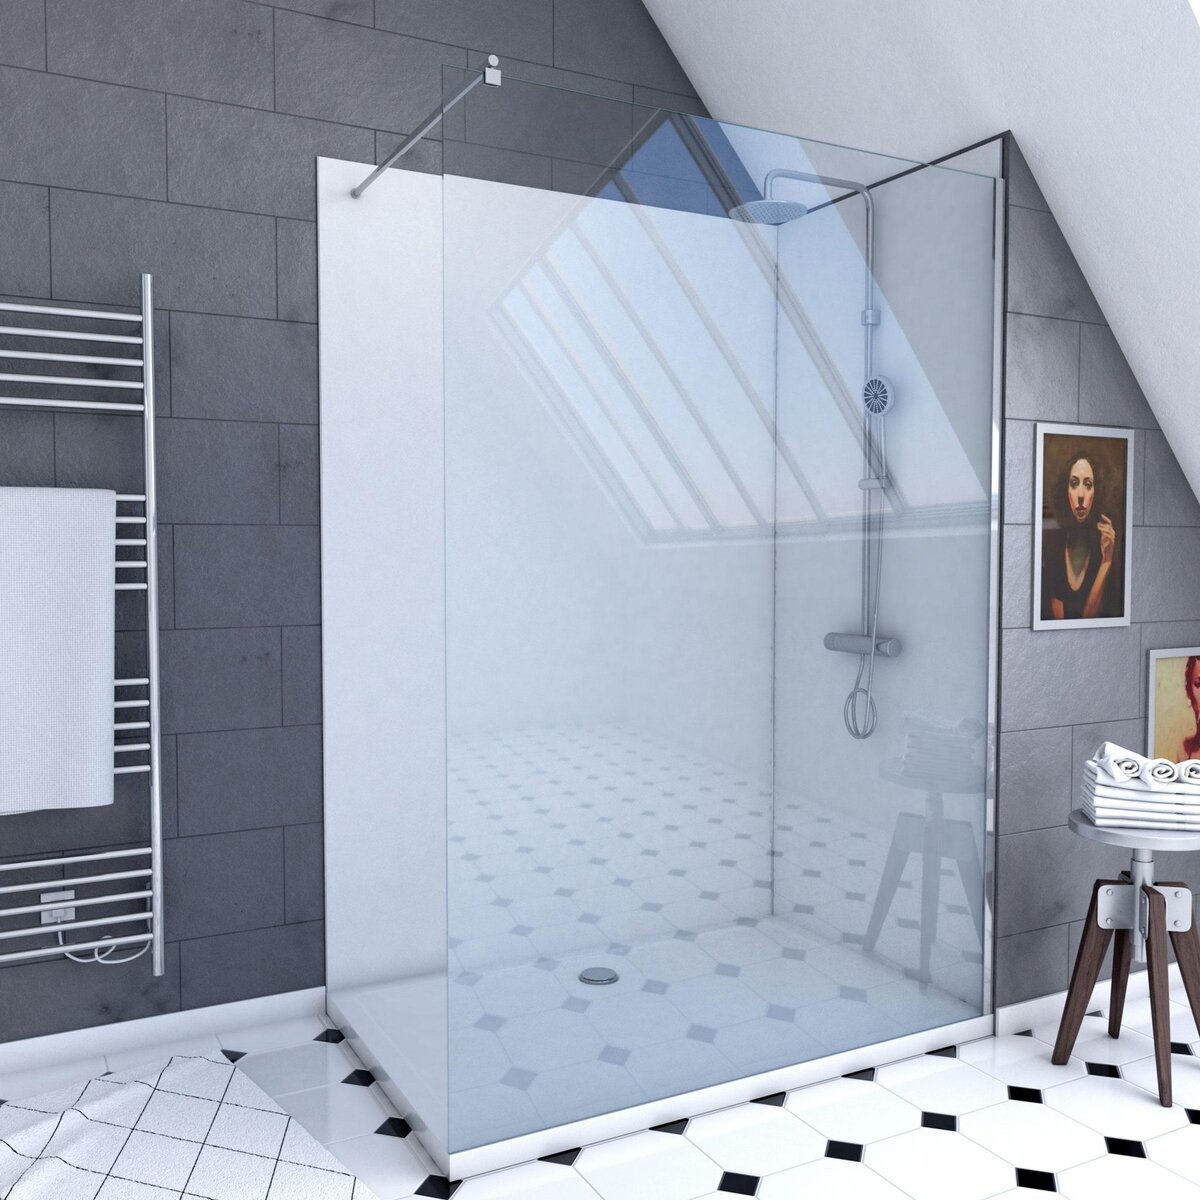 Aurlane Ensemble complet douche à l'Italiennne avec Receveur 90x120 + Paroi transparent + Panneaux muraux